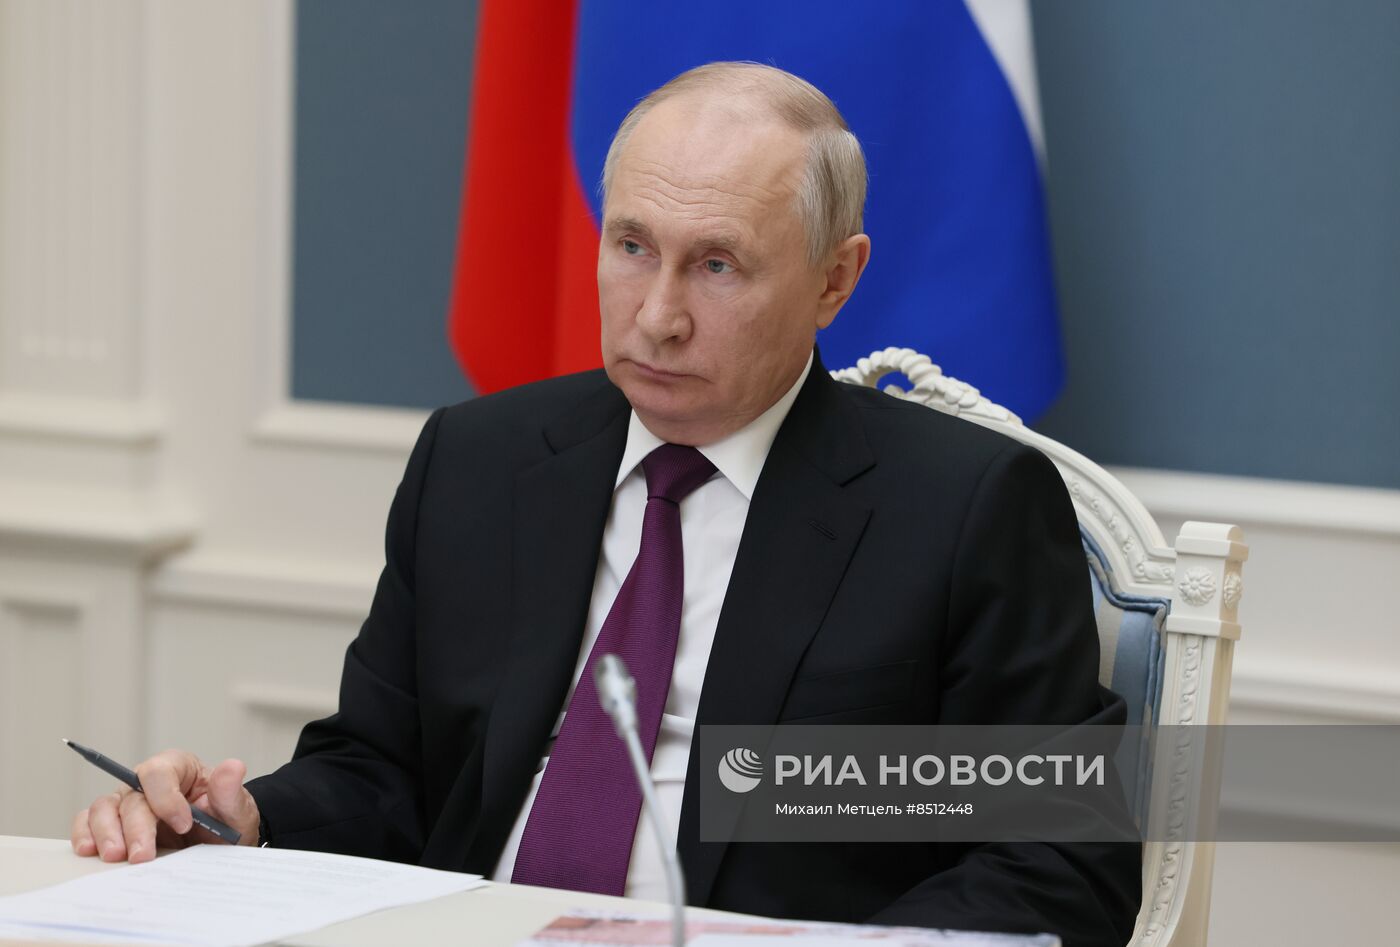 Президент РФ В. Путин провел совещание по вопросам развития Смоленской области